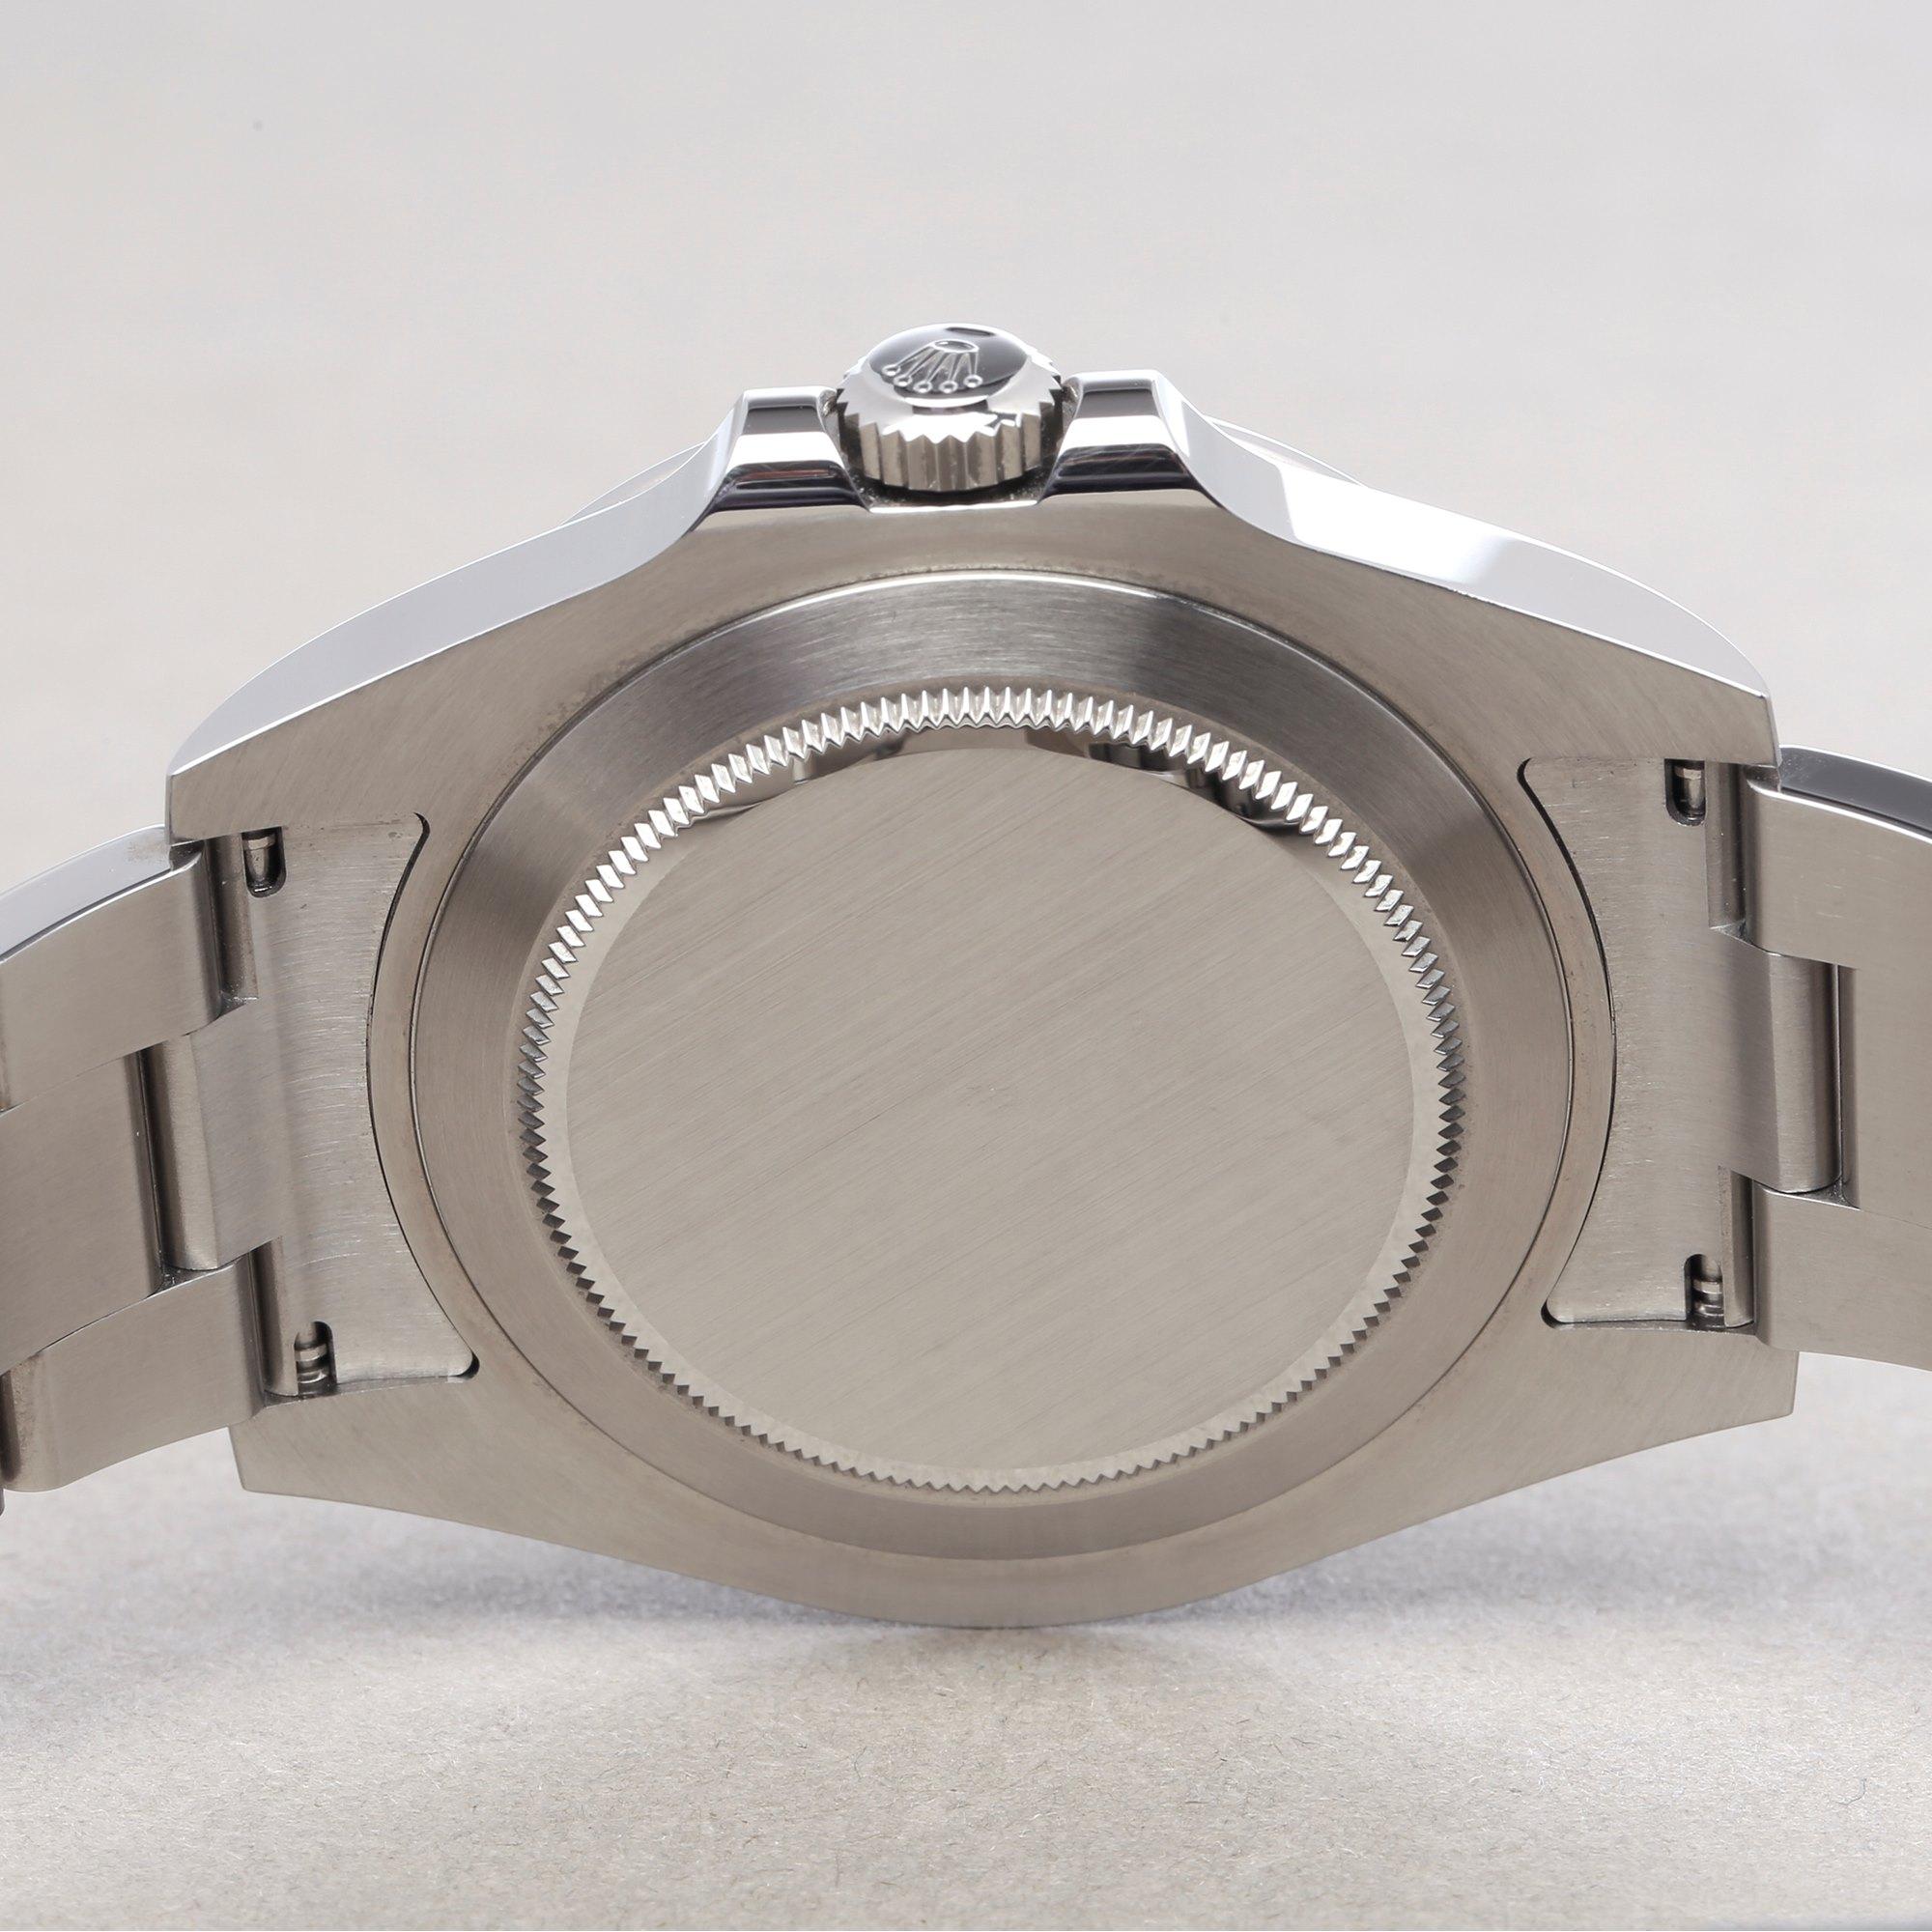 Rolex Explorer II 216570 Men's Stainless Steel Watch 5